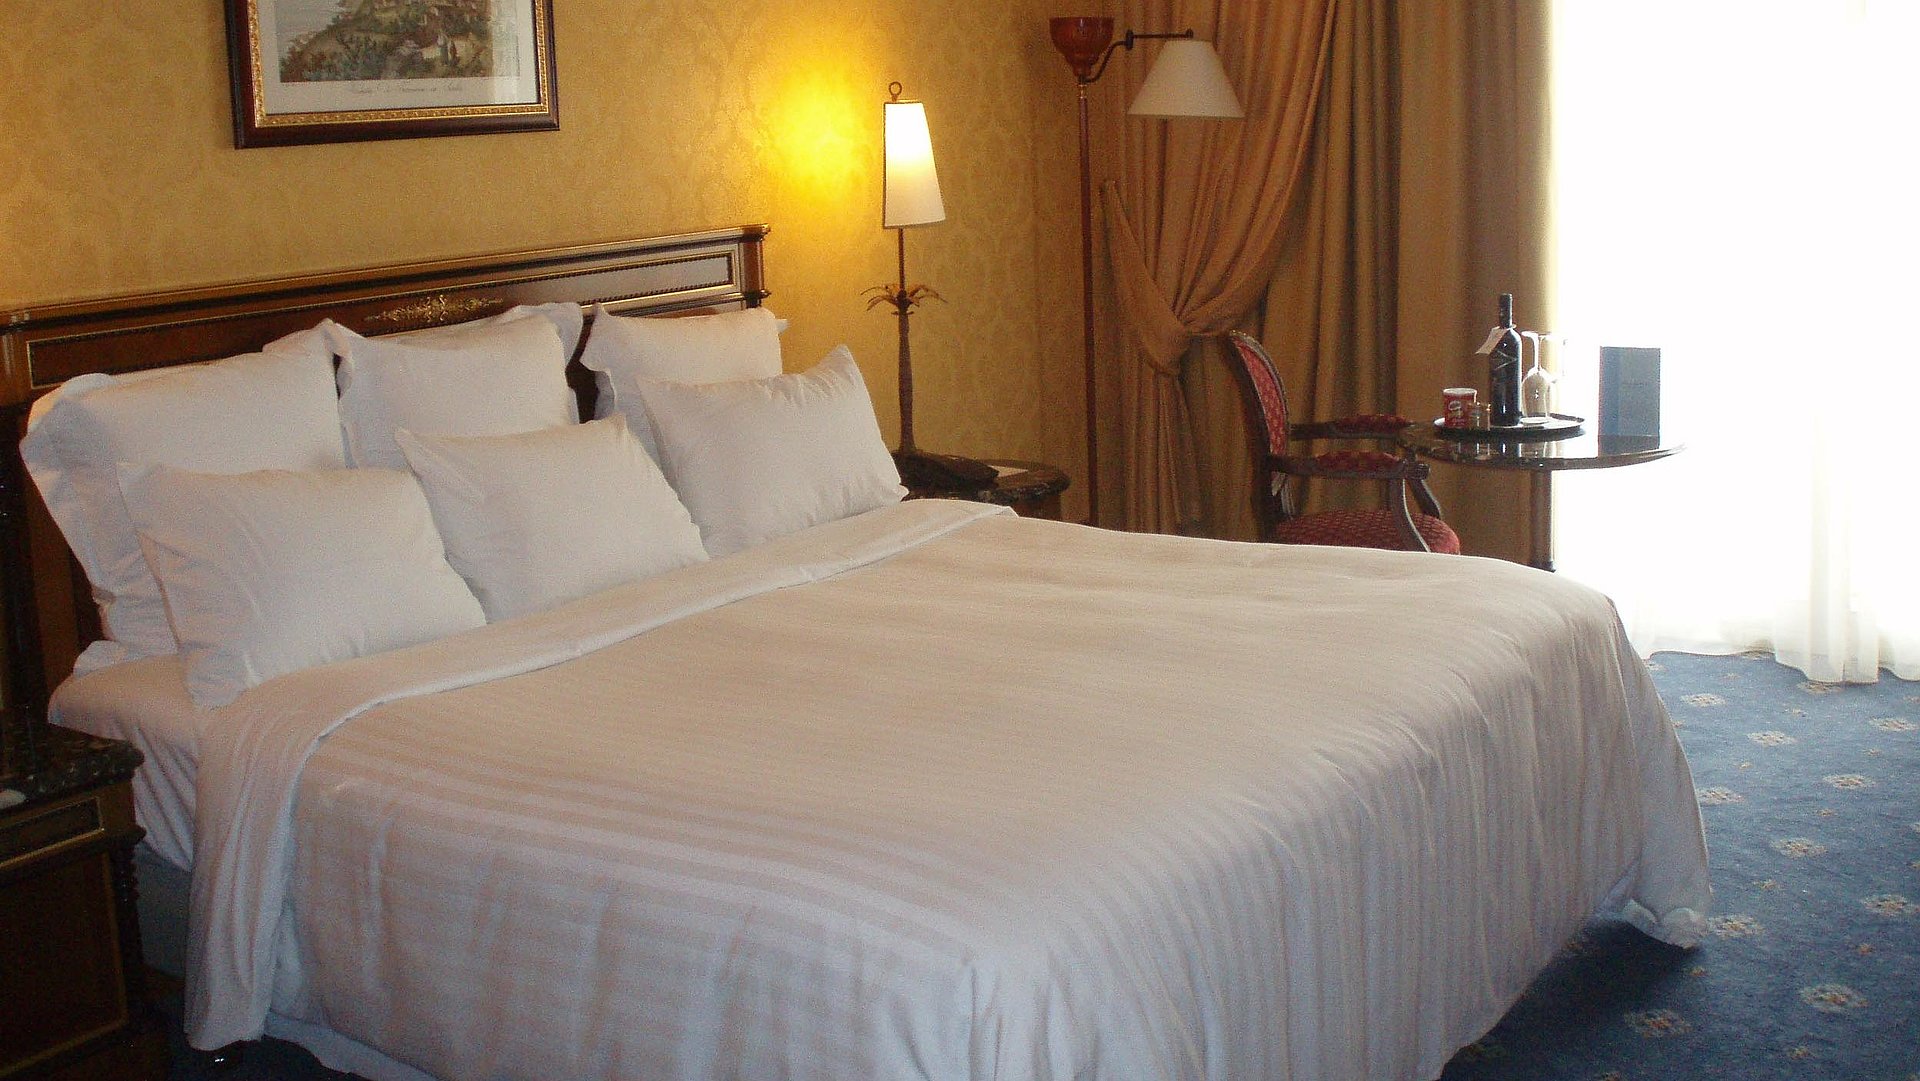 Hotels Für Gruppen in Oberbayern - sehr ordentliches Hotelzimmer mit großem Bett und warmer Nachtlampe wird durch weiße Gardinen durchleuchtet